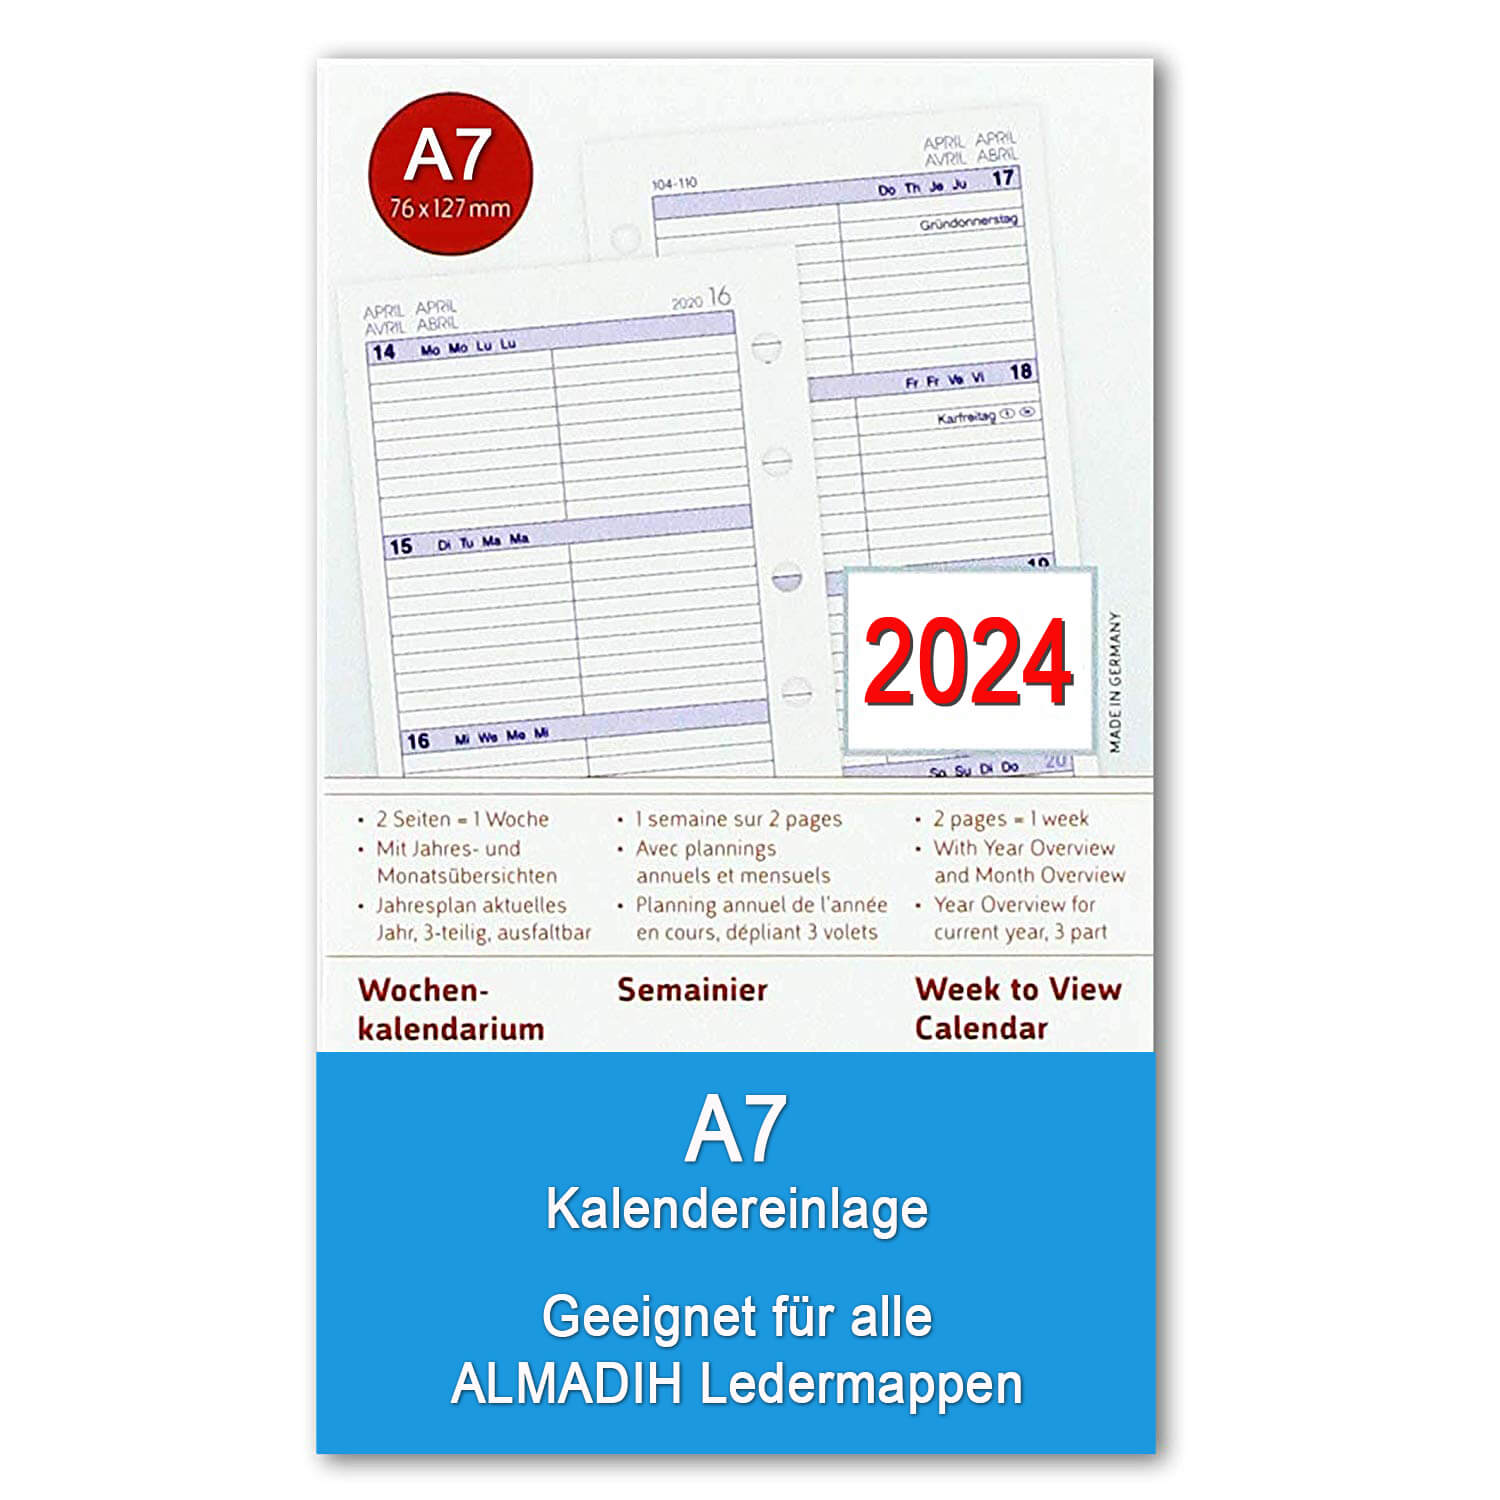 ALMADIH Kalendereinlage A7 Pocket für 2024 - 1 Woche auf 2 Seiten